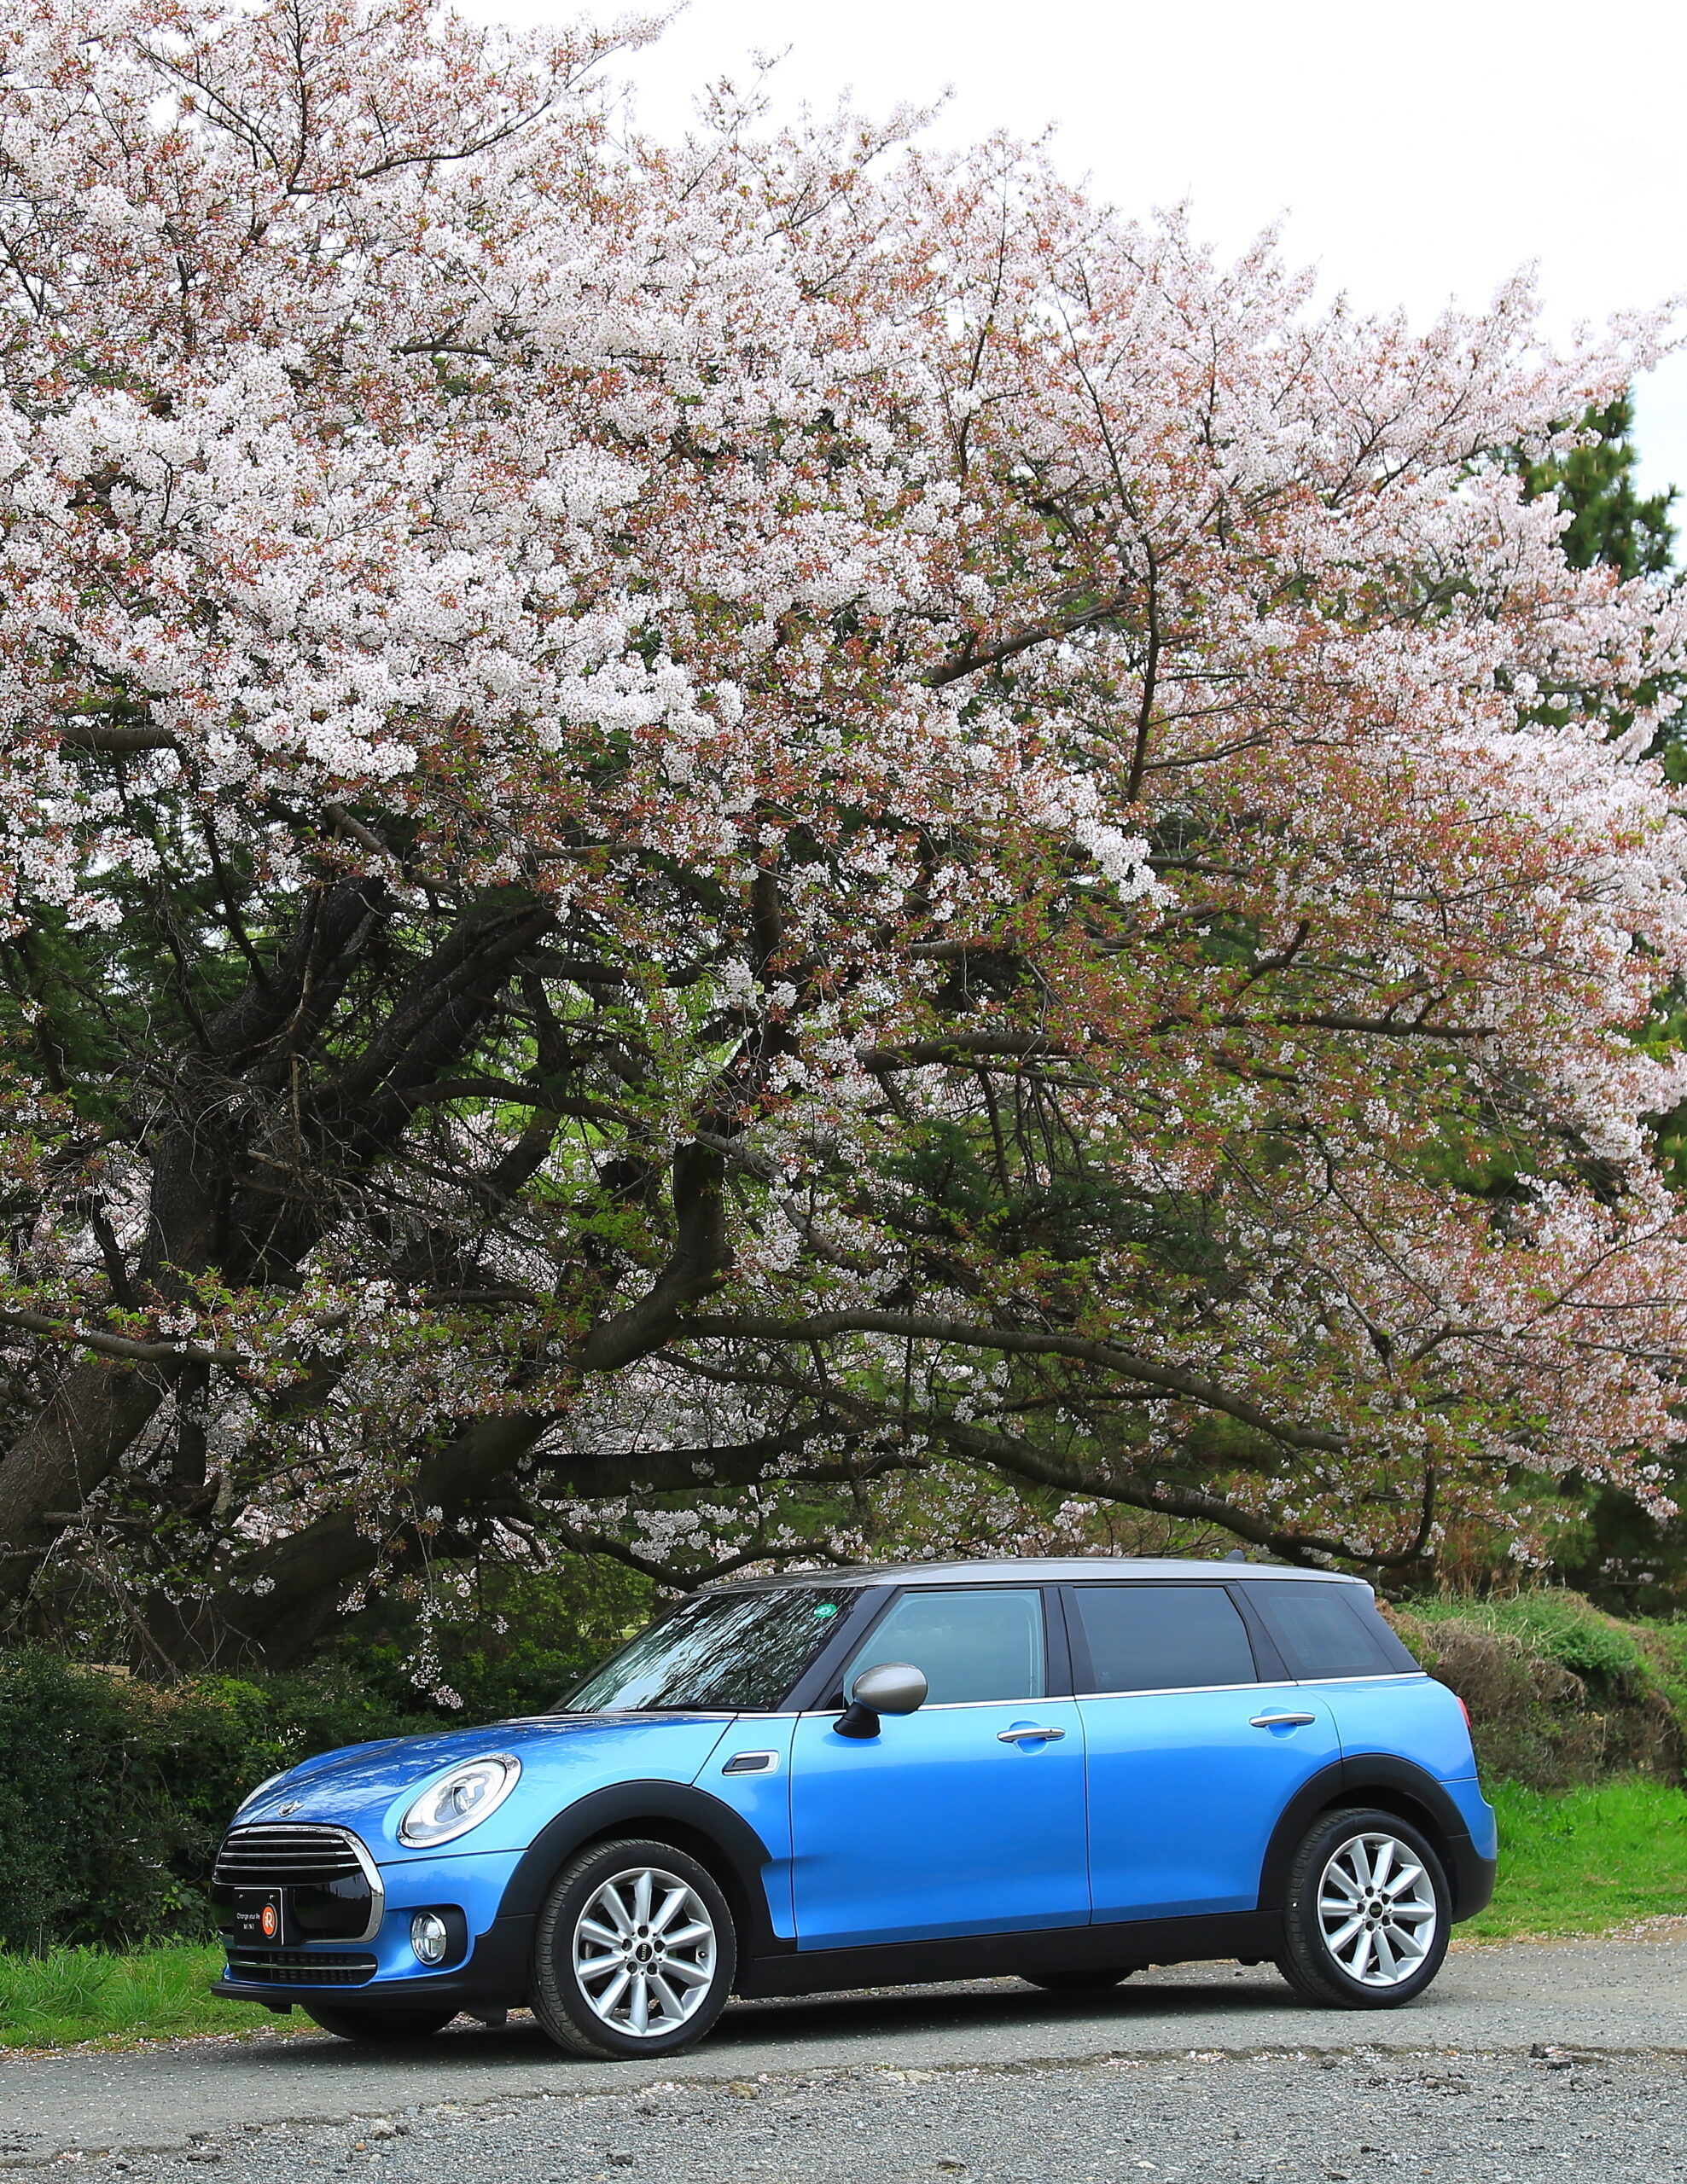 BMWミニ・クーパーDクラブマンに乗って 桜のトンネルを探しにいった